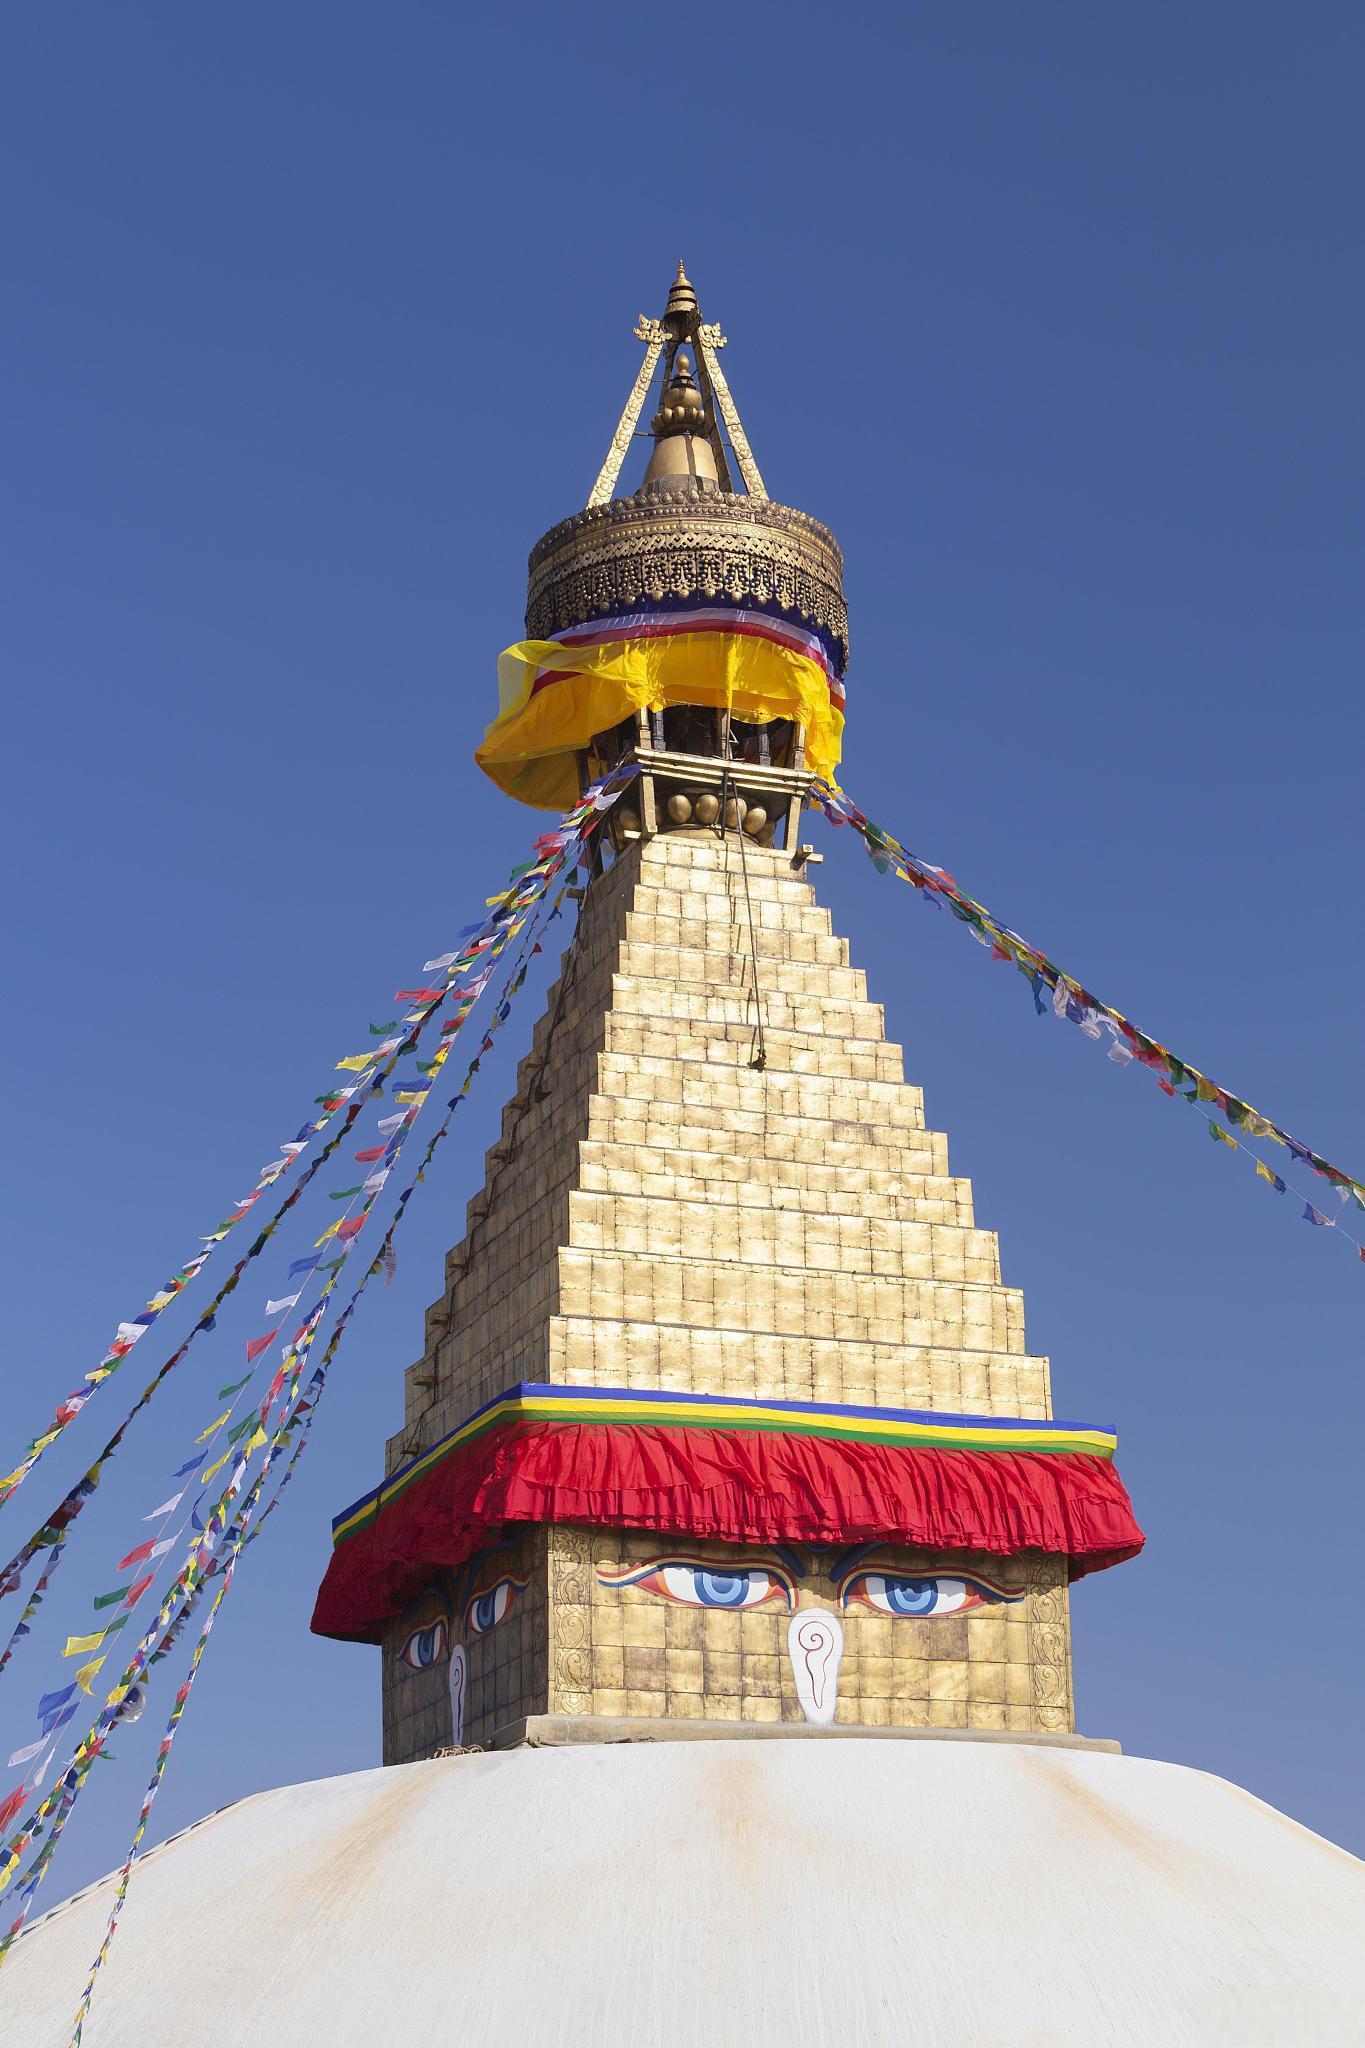 探寻藏族文化的瑰宝——木雅金塔 木雅金塔位于中国四川省甘孜藏族